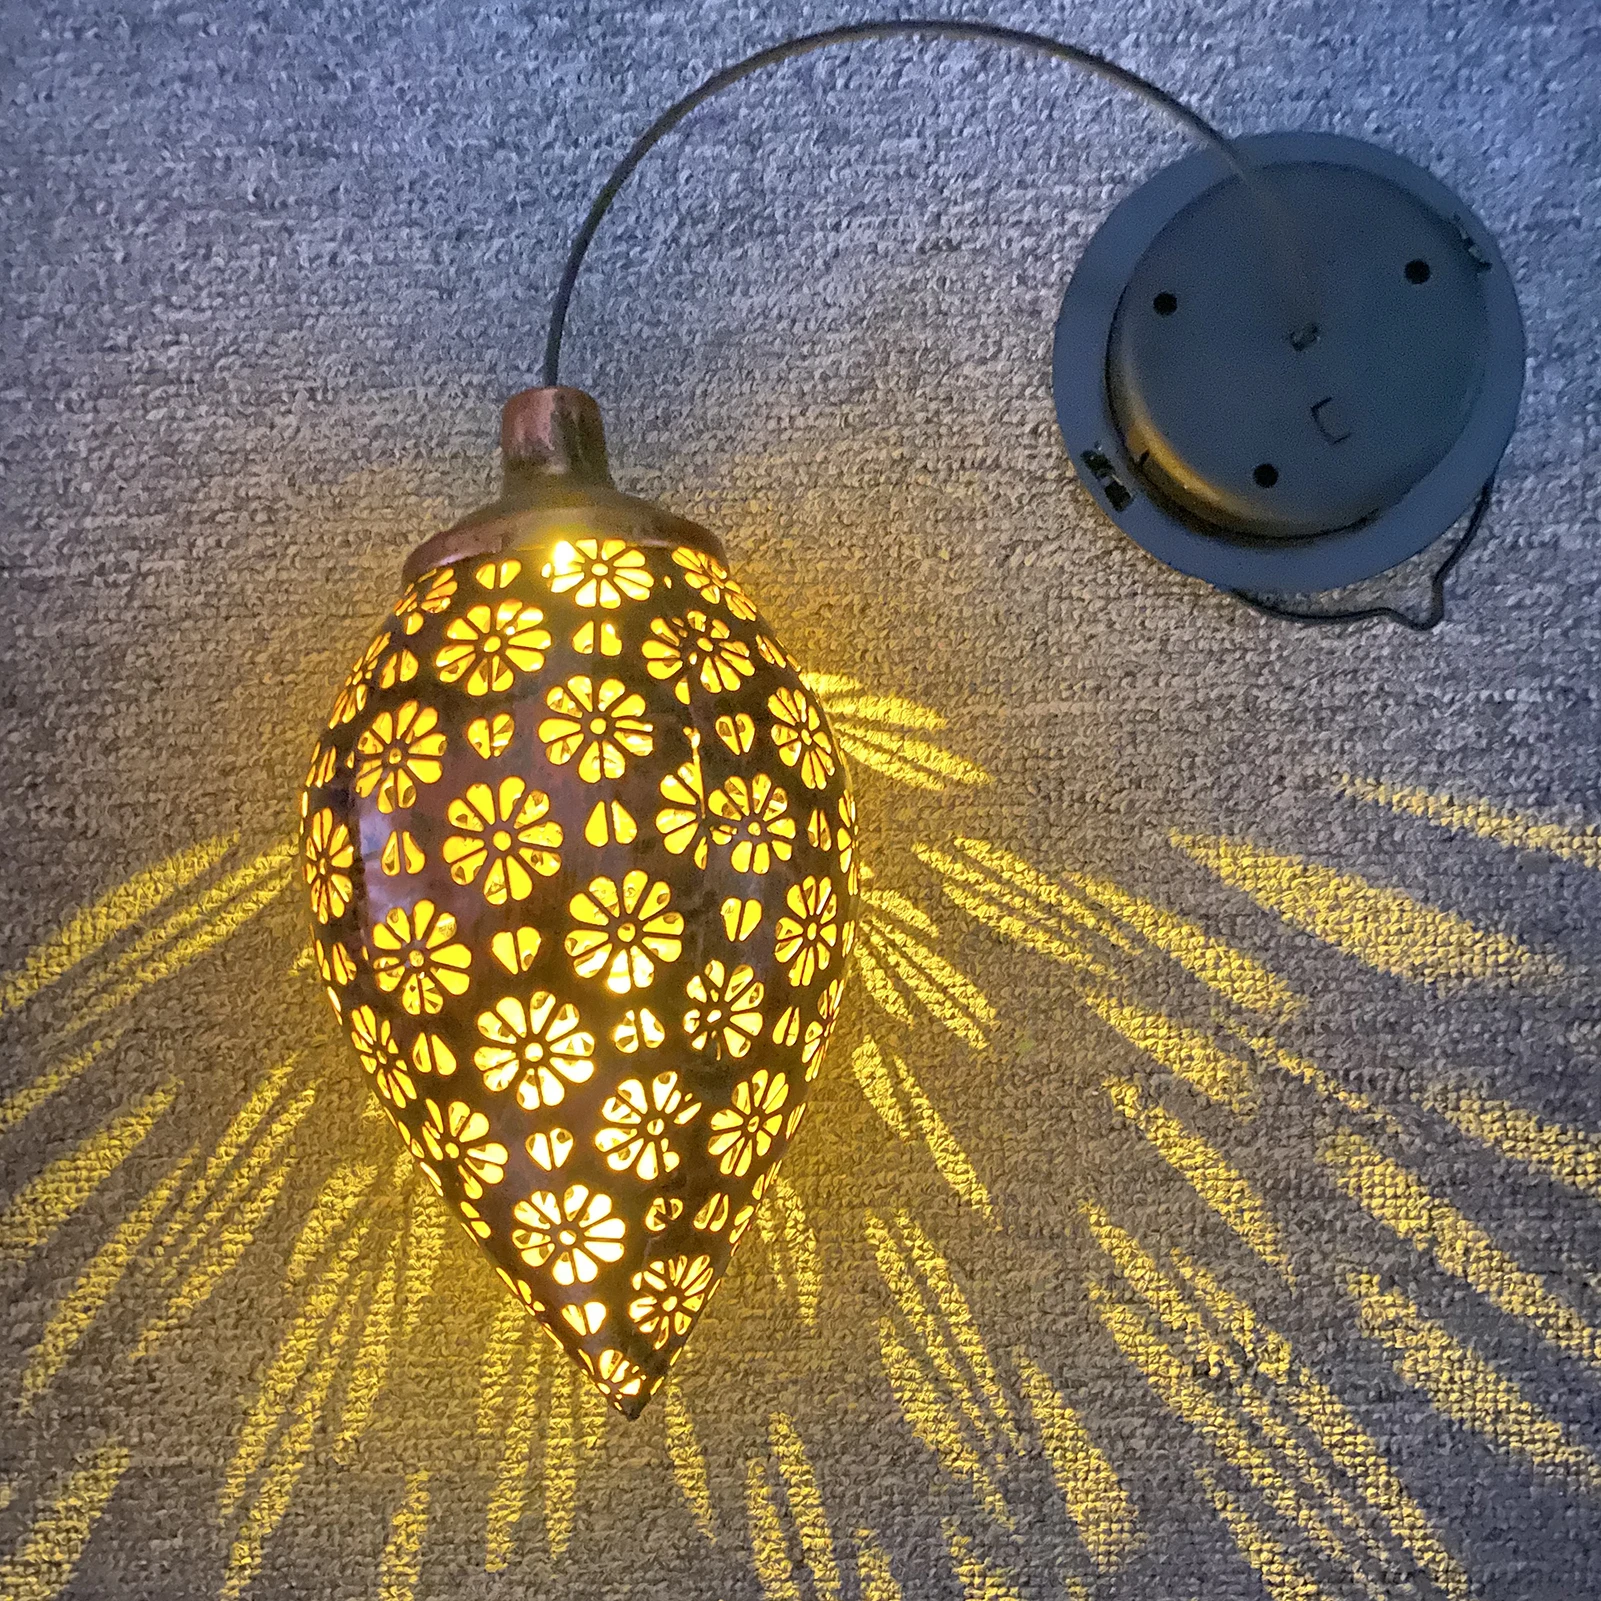 Светодиодный солнечный фонарь, полый Водонепроницаемый садовый светильник, подвесные уличные гирлянды для украшения сада солнечной лампой.